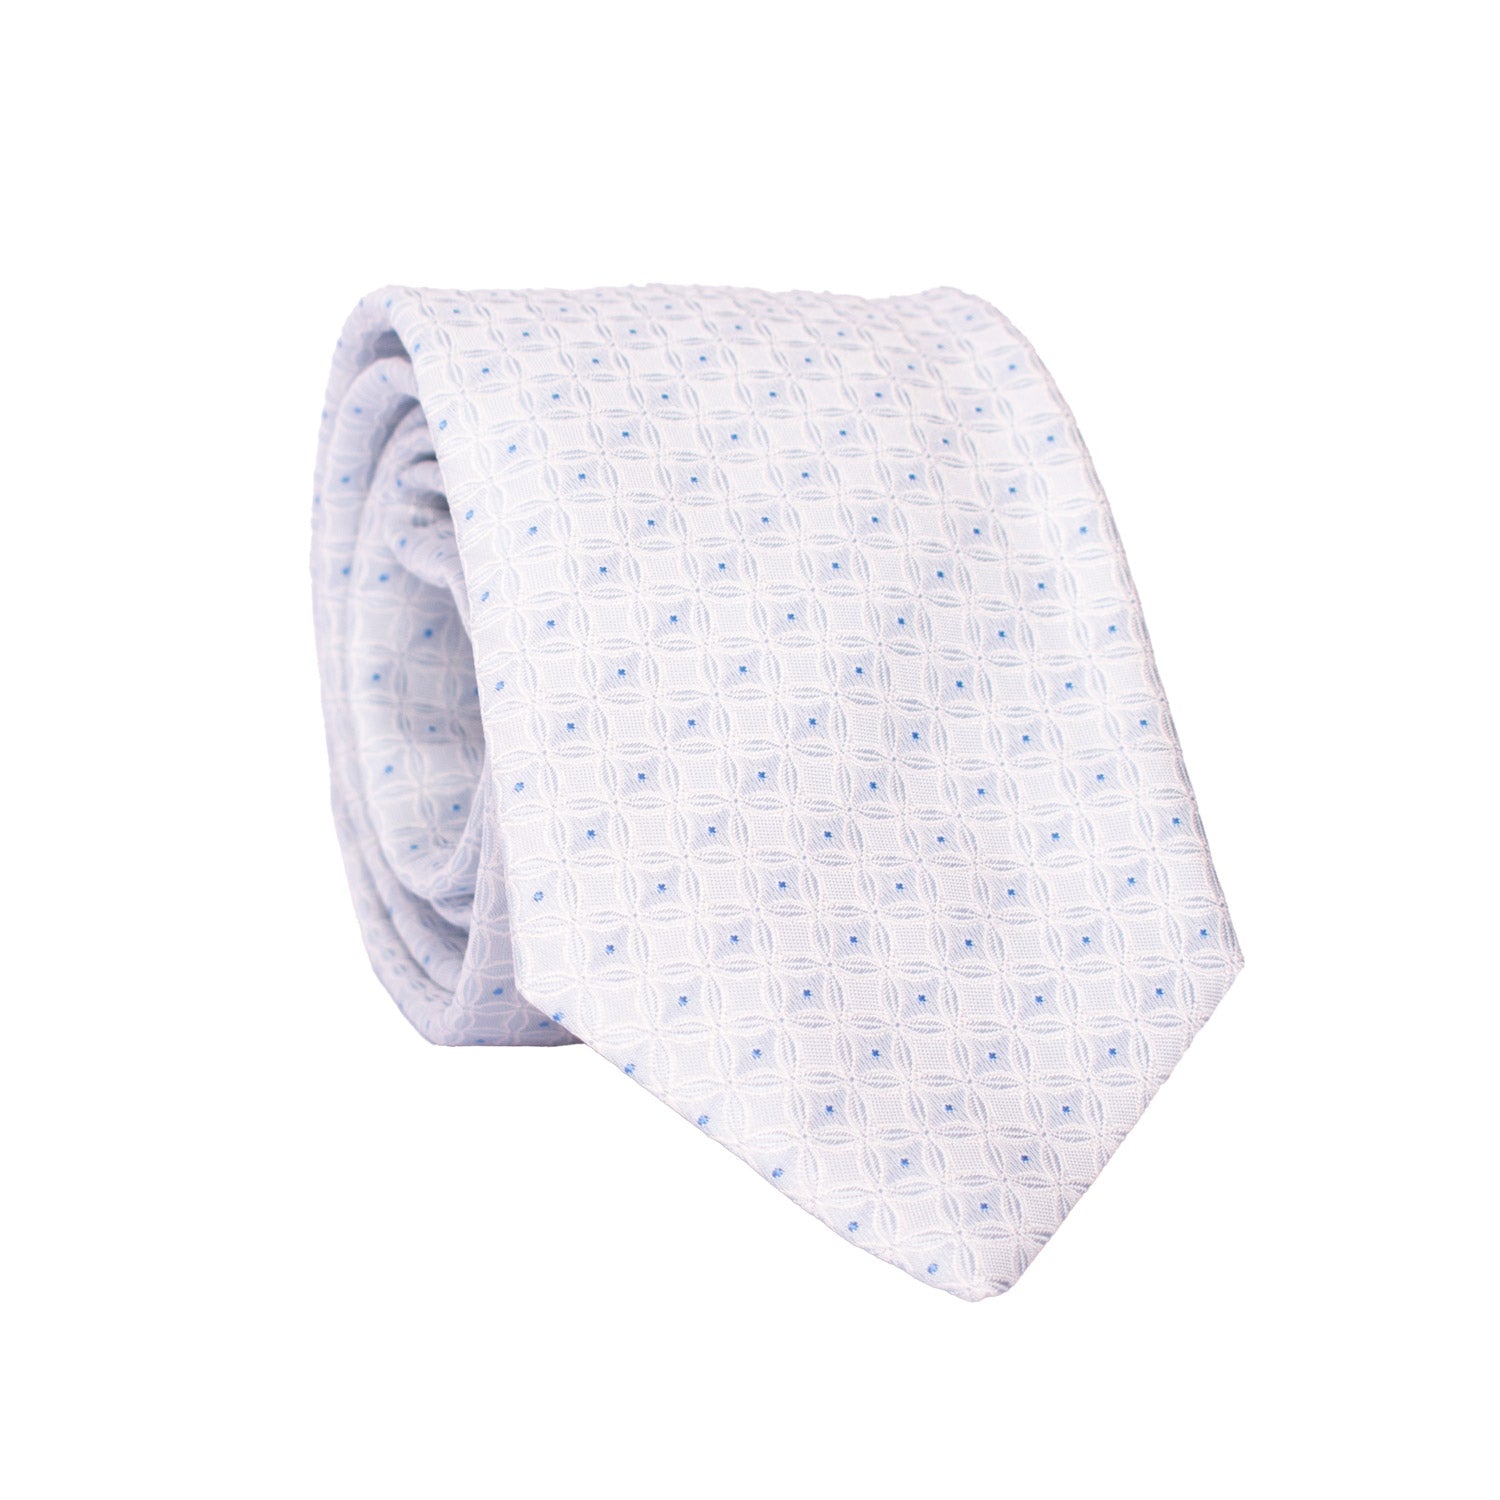 Cravatta da Cerimonia di Seta Color Ghiaccio Fantasia Bianca Bluette Made in Italy Graffeo Cravatte Arrotolata